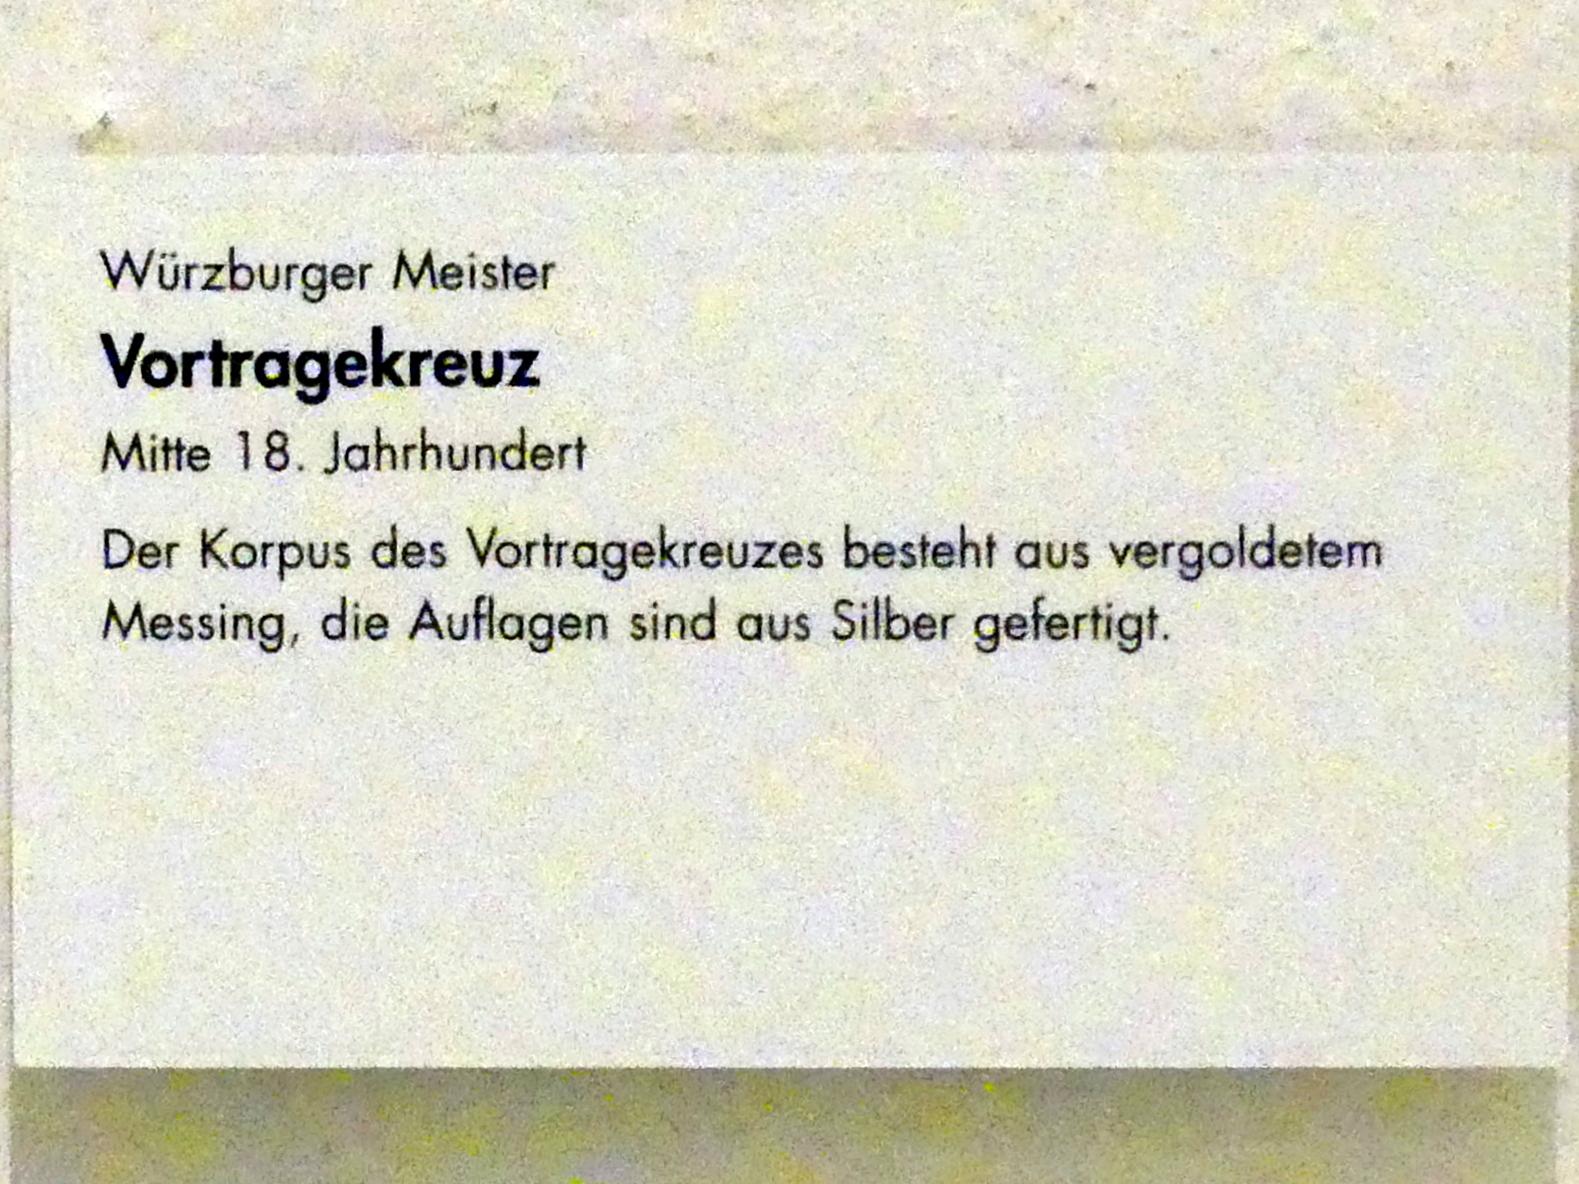 Vortragekreuz, Würzburg, Museum für Franken (ehem. Mainfränkisches Museum), Barock-Saal, Mitte 18. Jhd., Bild 2/2